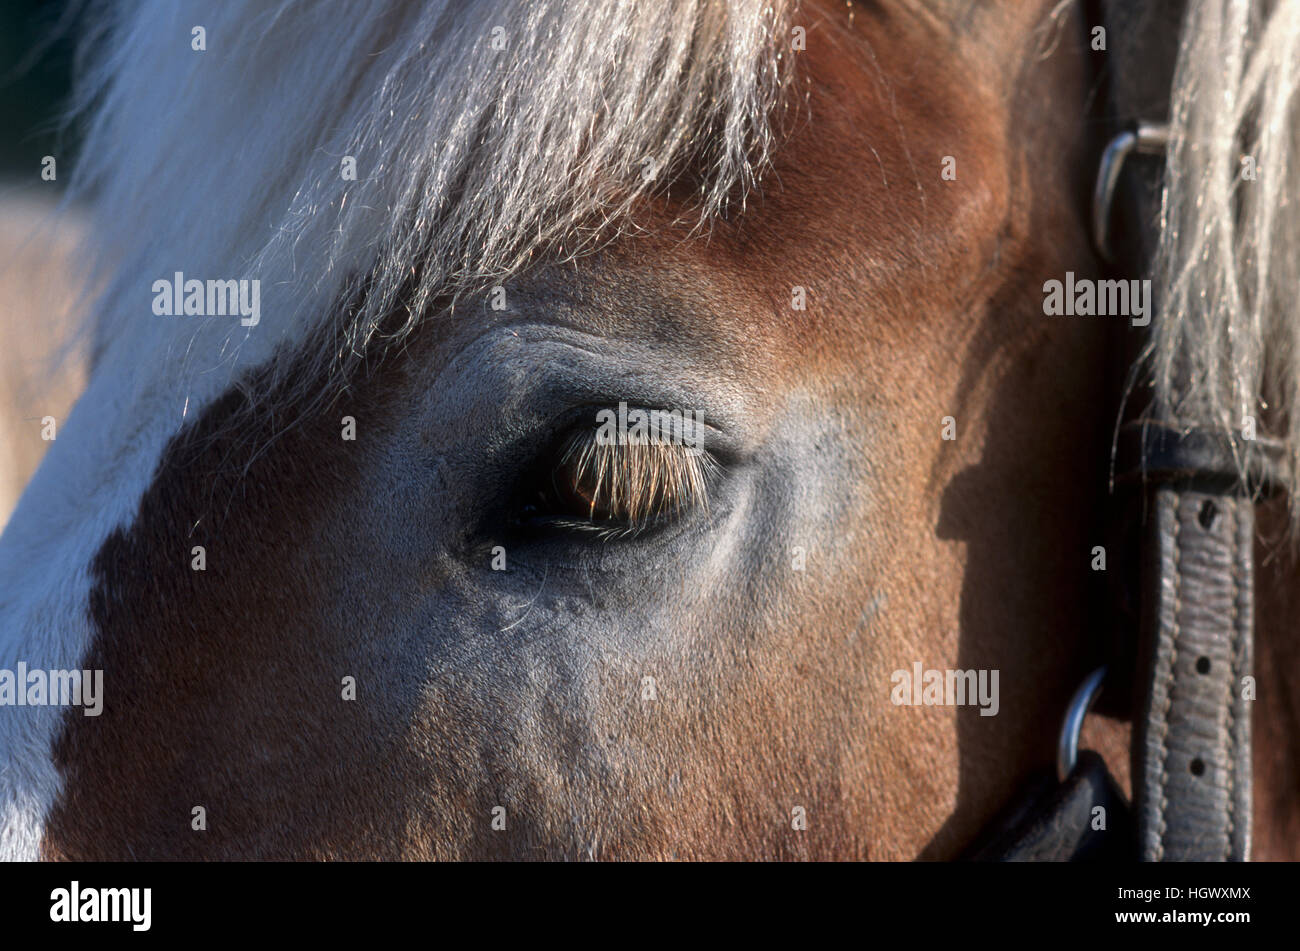 Horse's eye and eyelashes Stock Photo